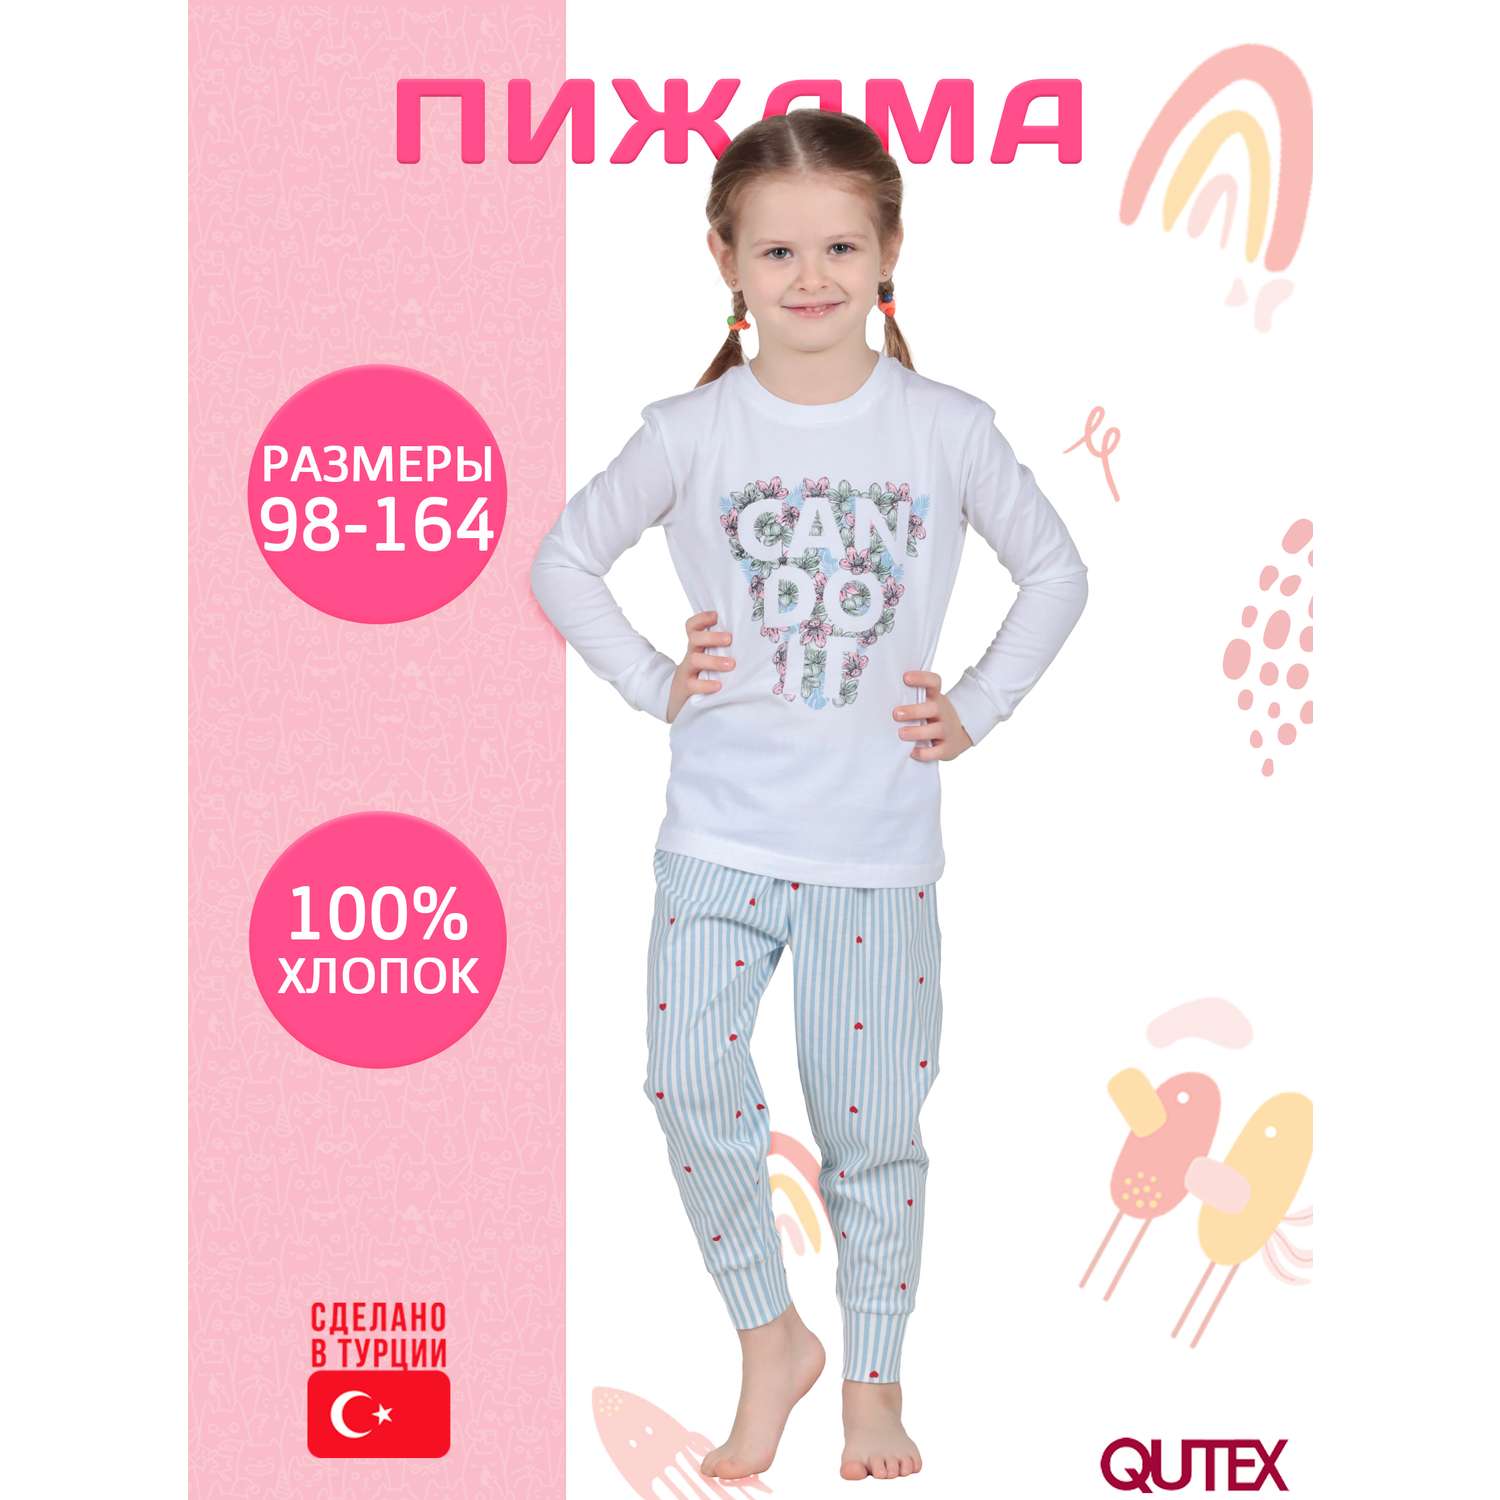 Пижама QUTEX 2301-001-1Q94 - фото 2